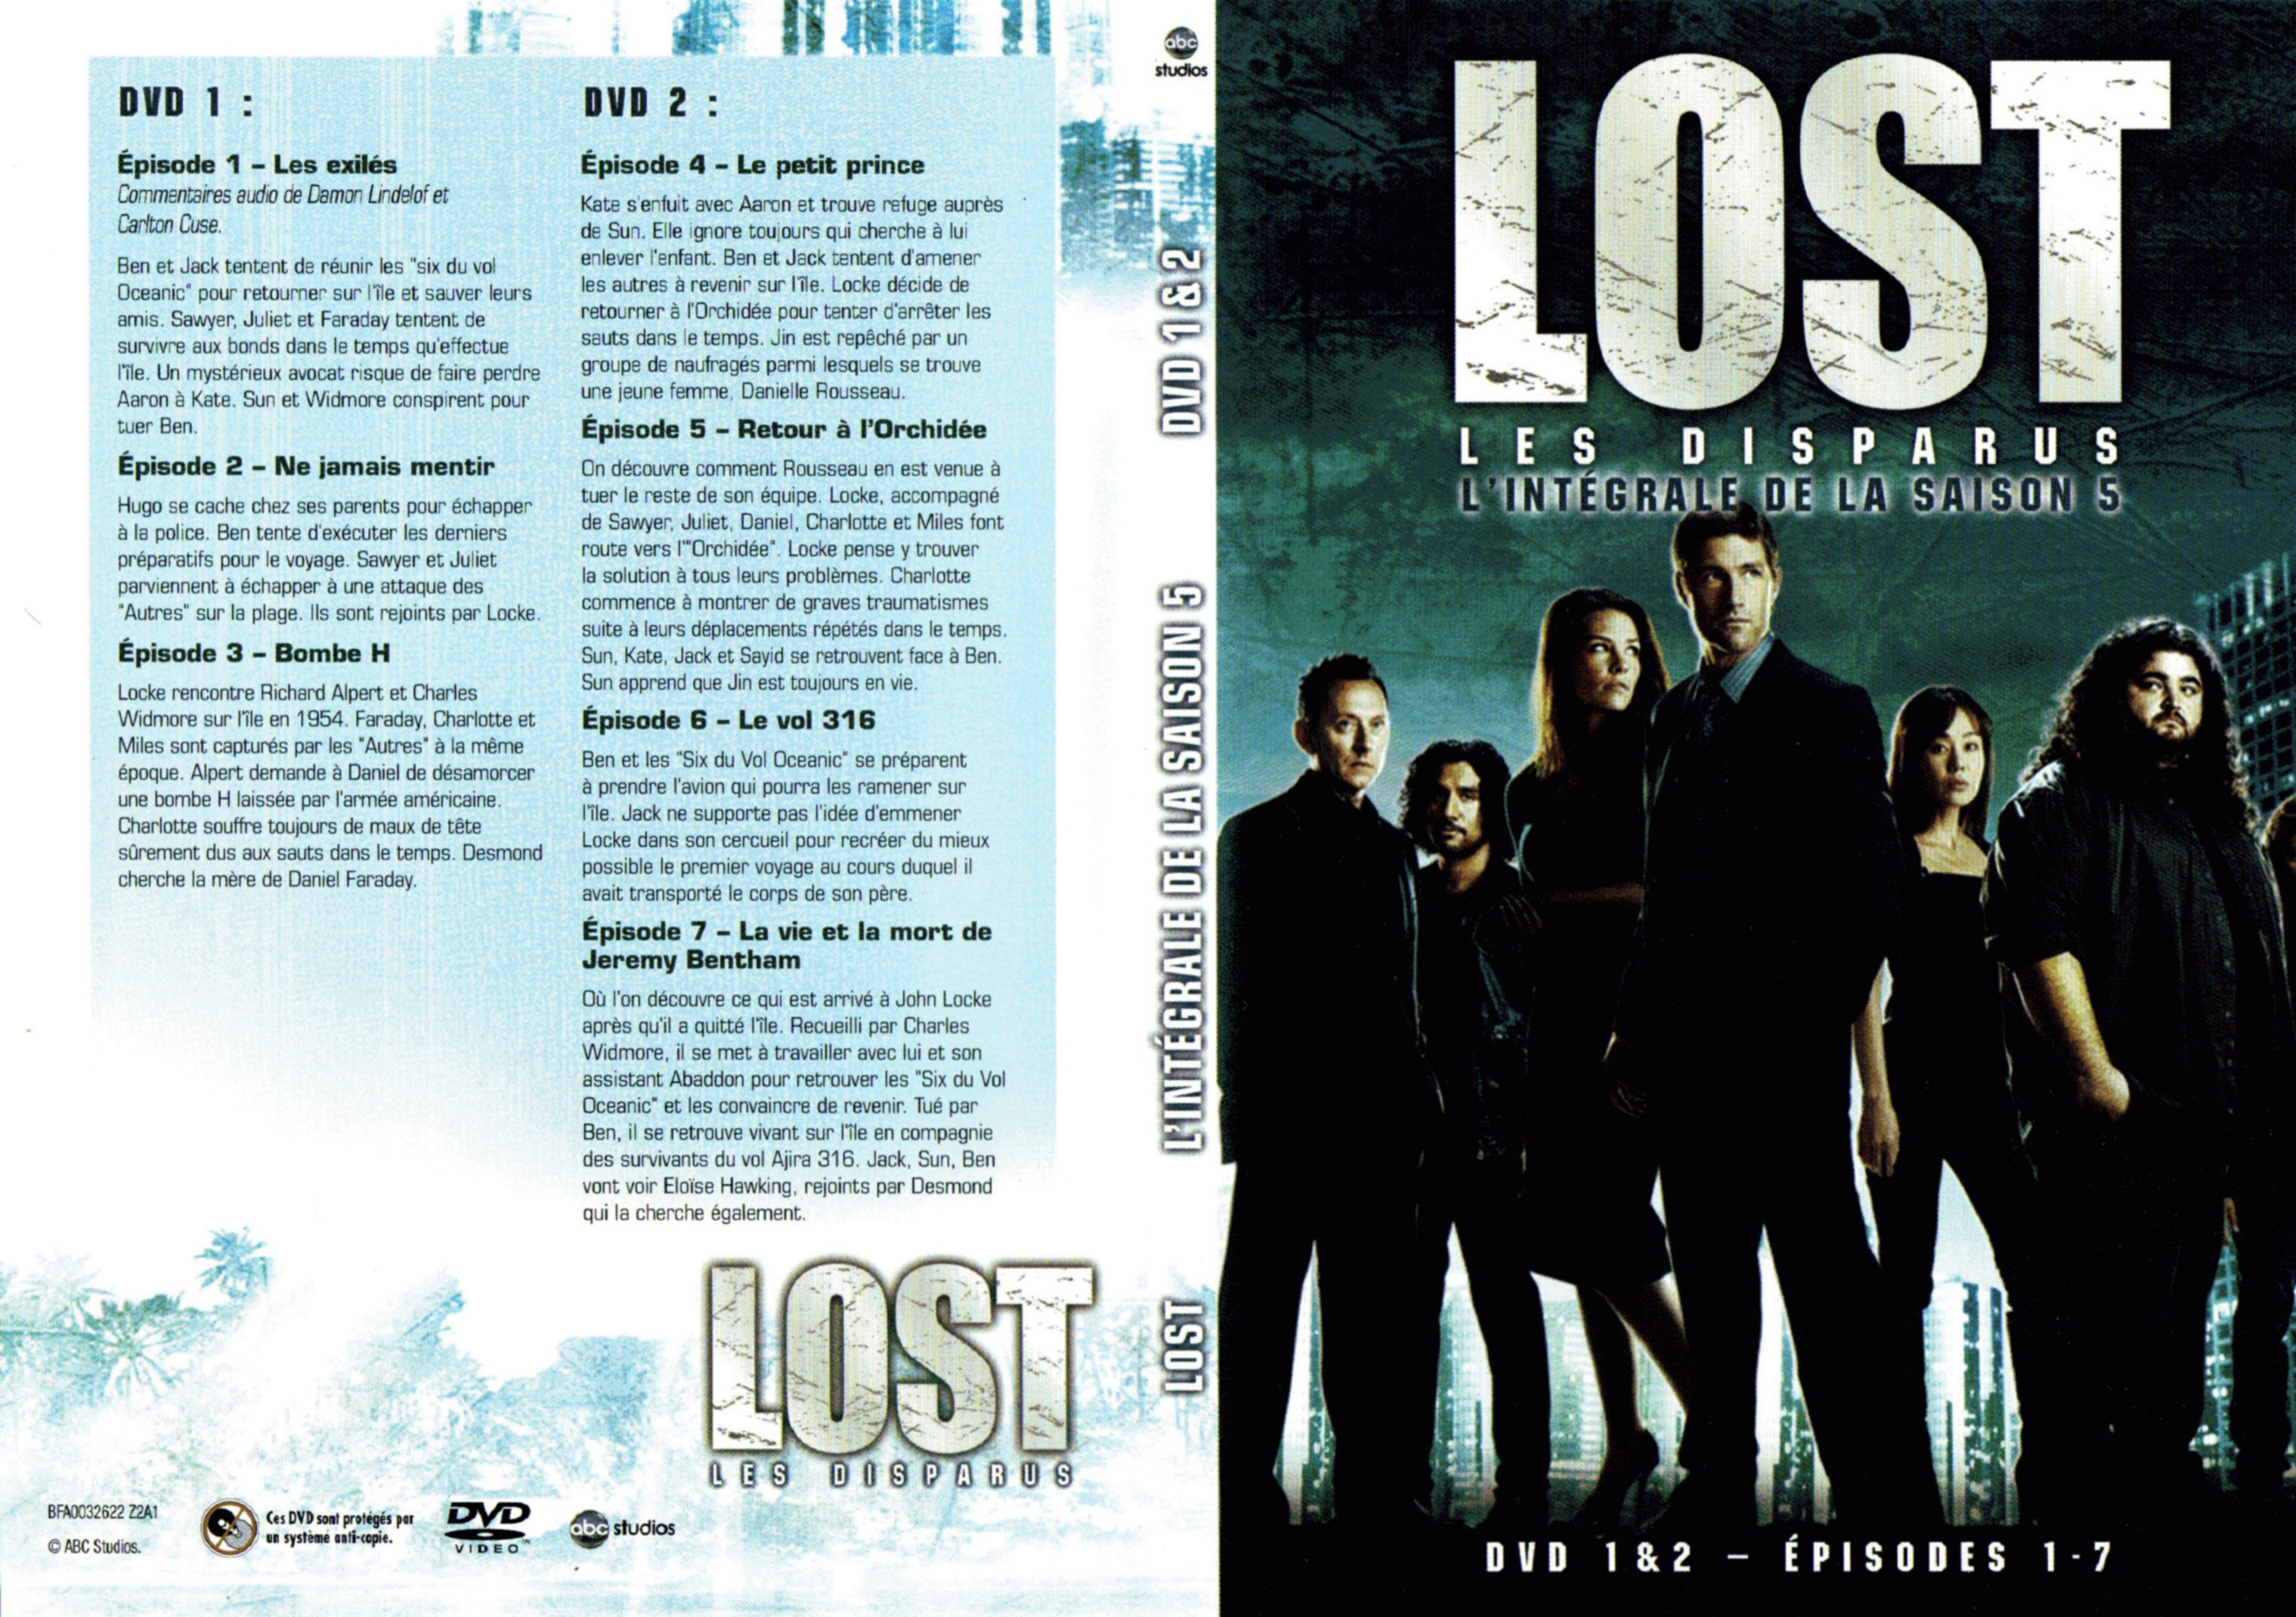 Jaquette DVD Lost Saison 5 DVD 1